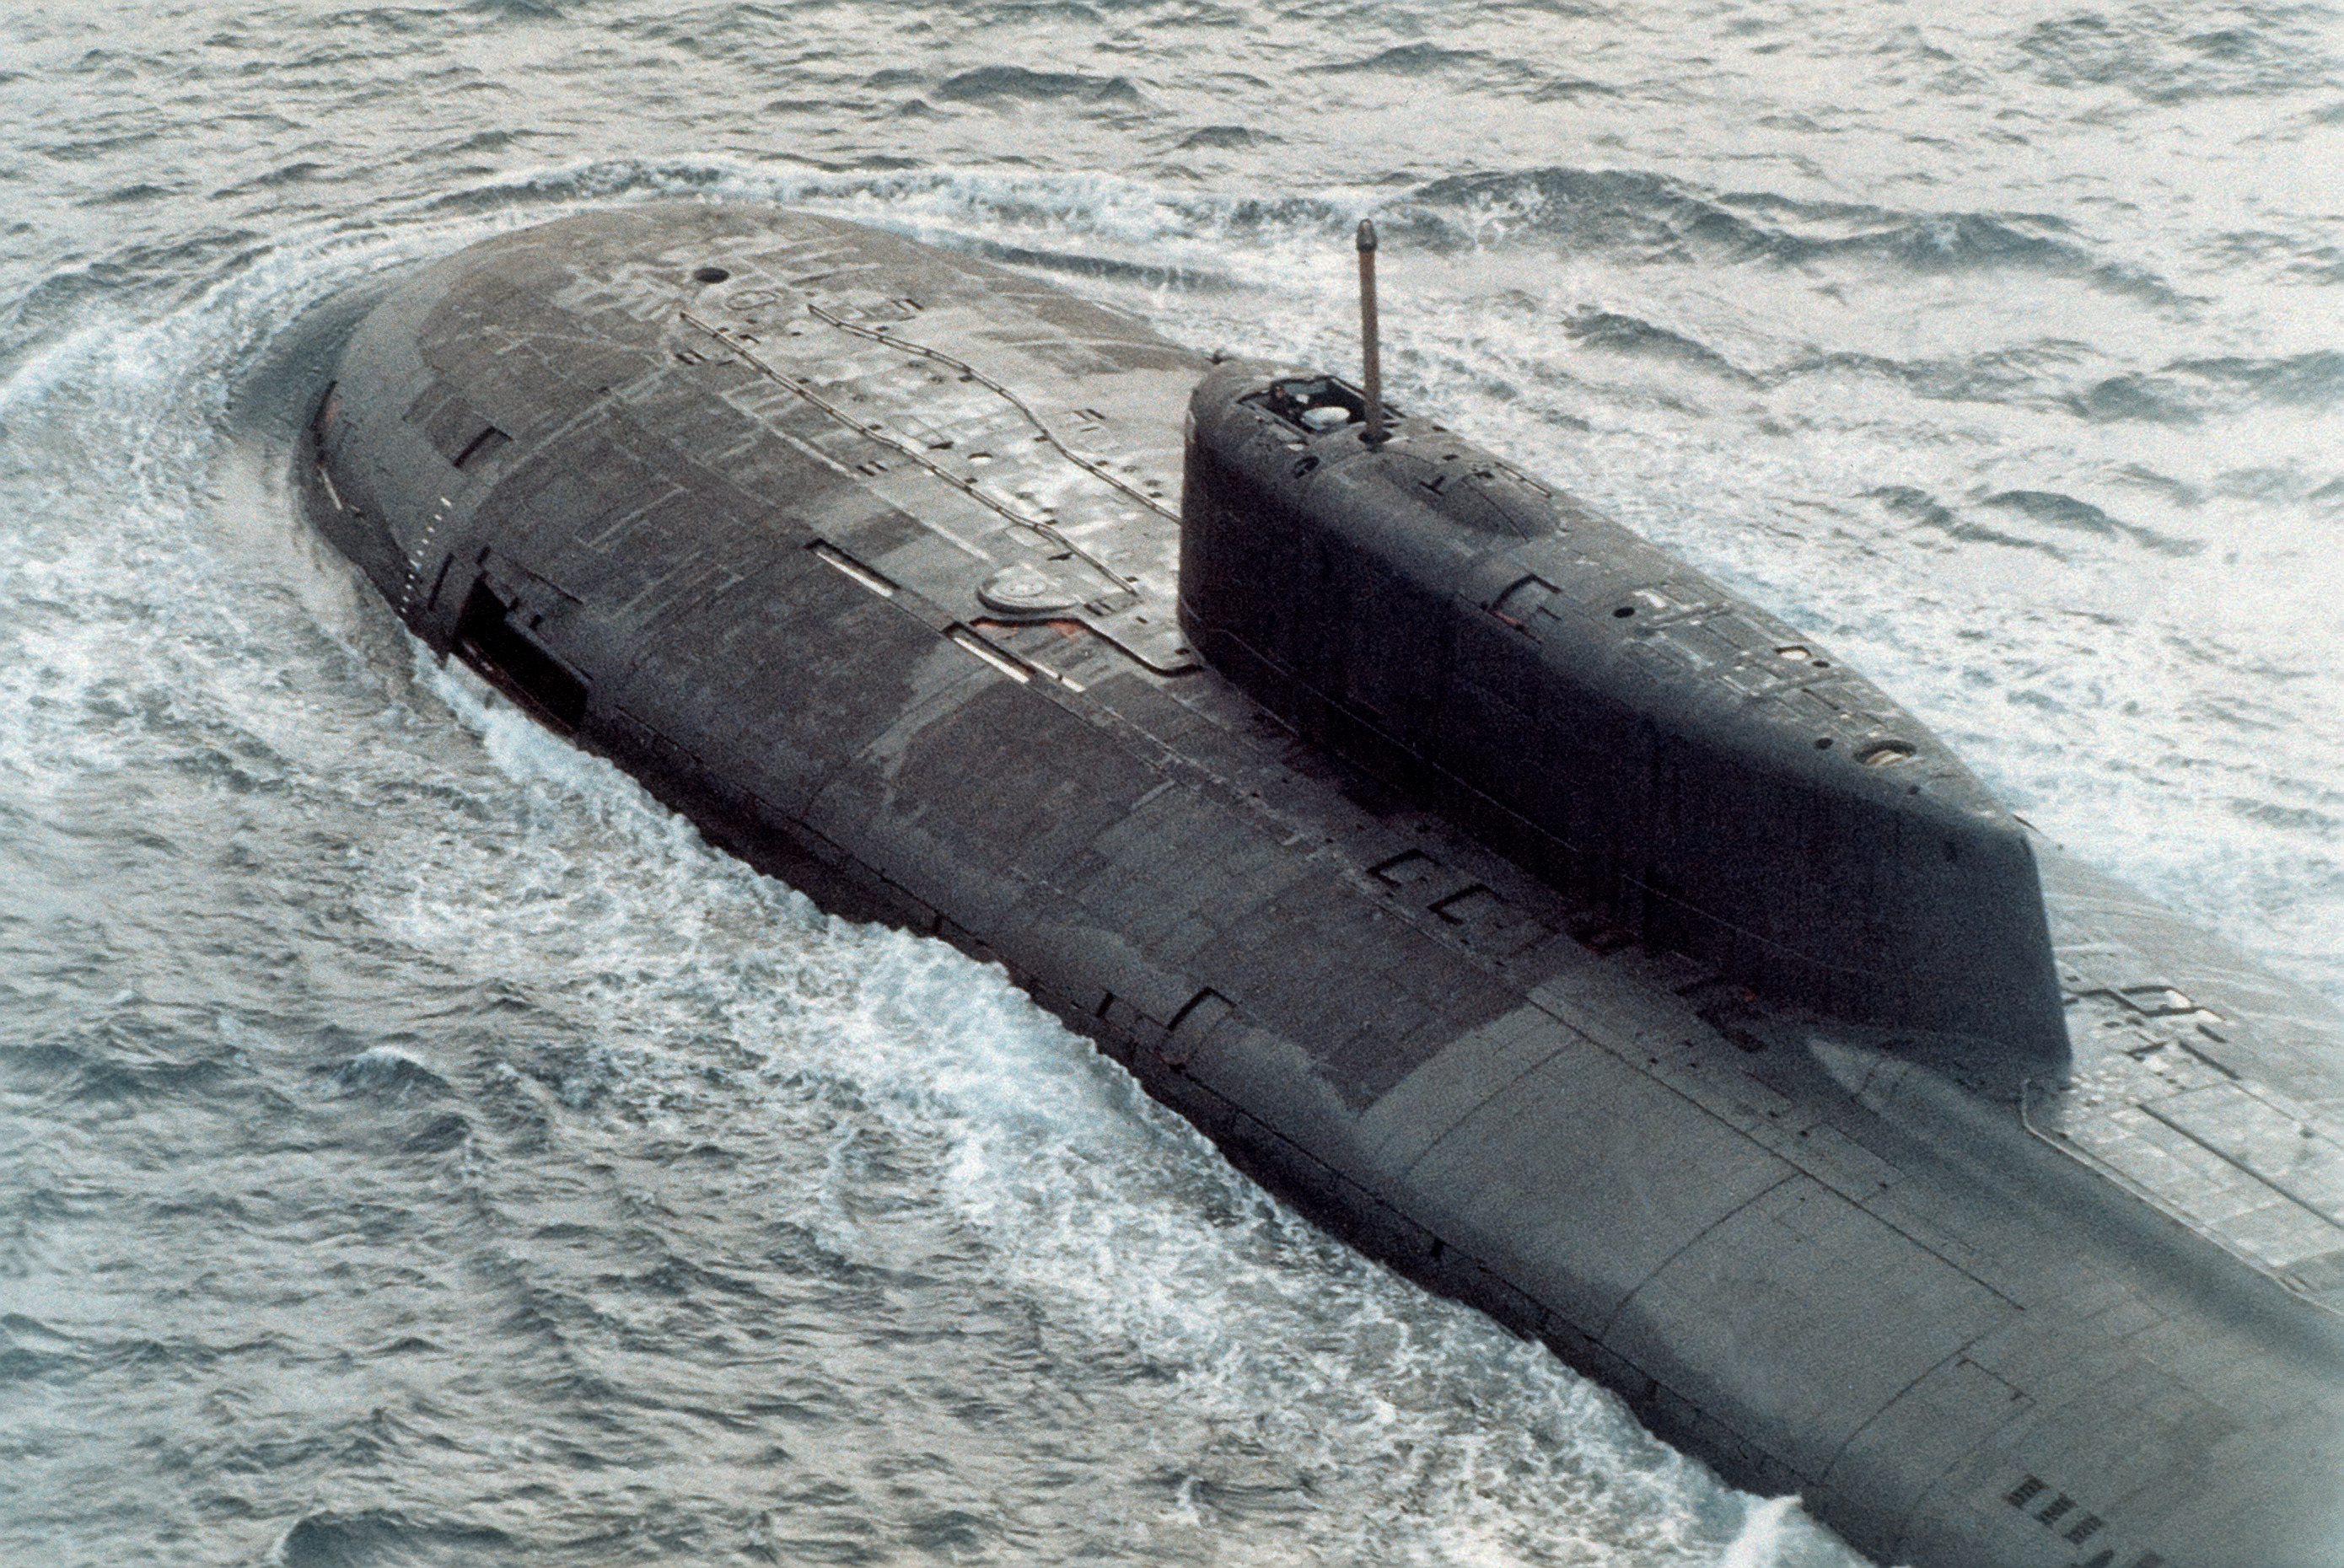 二炮涉核部队有那几个_军事档案解密全集二战汉潜艇_中国核潜艇部队解密